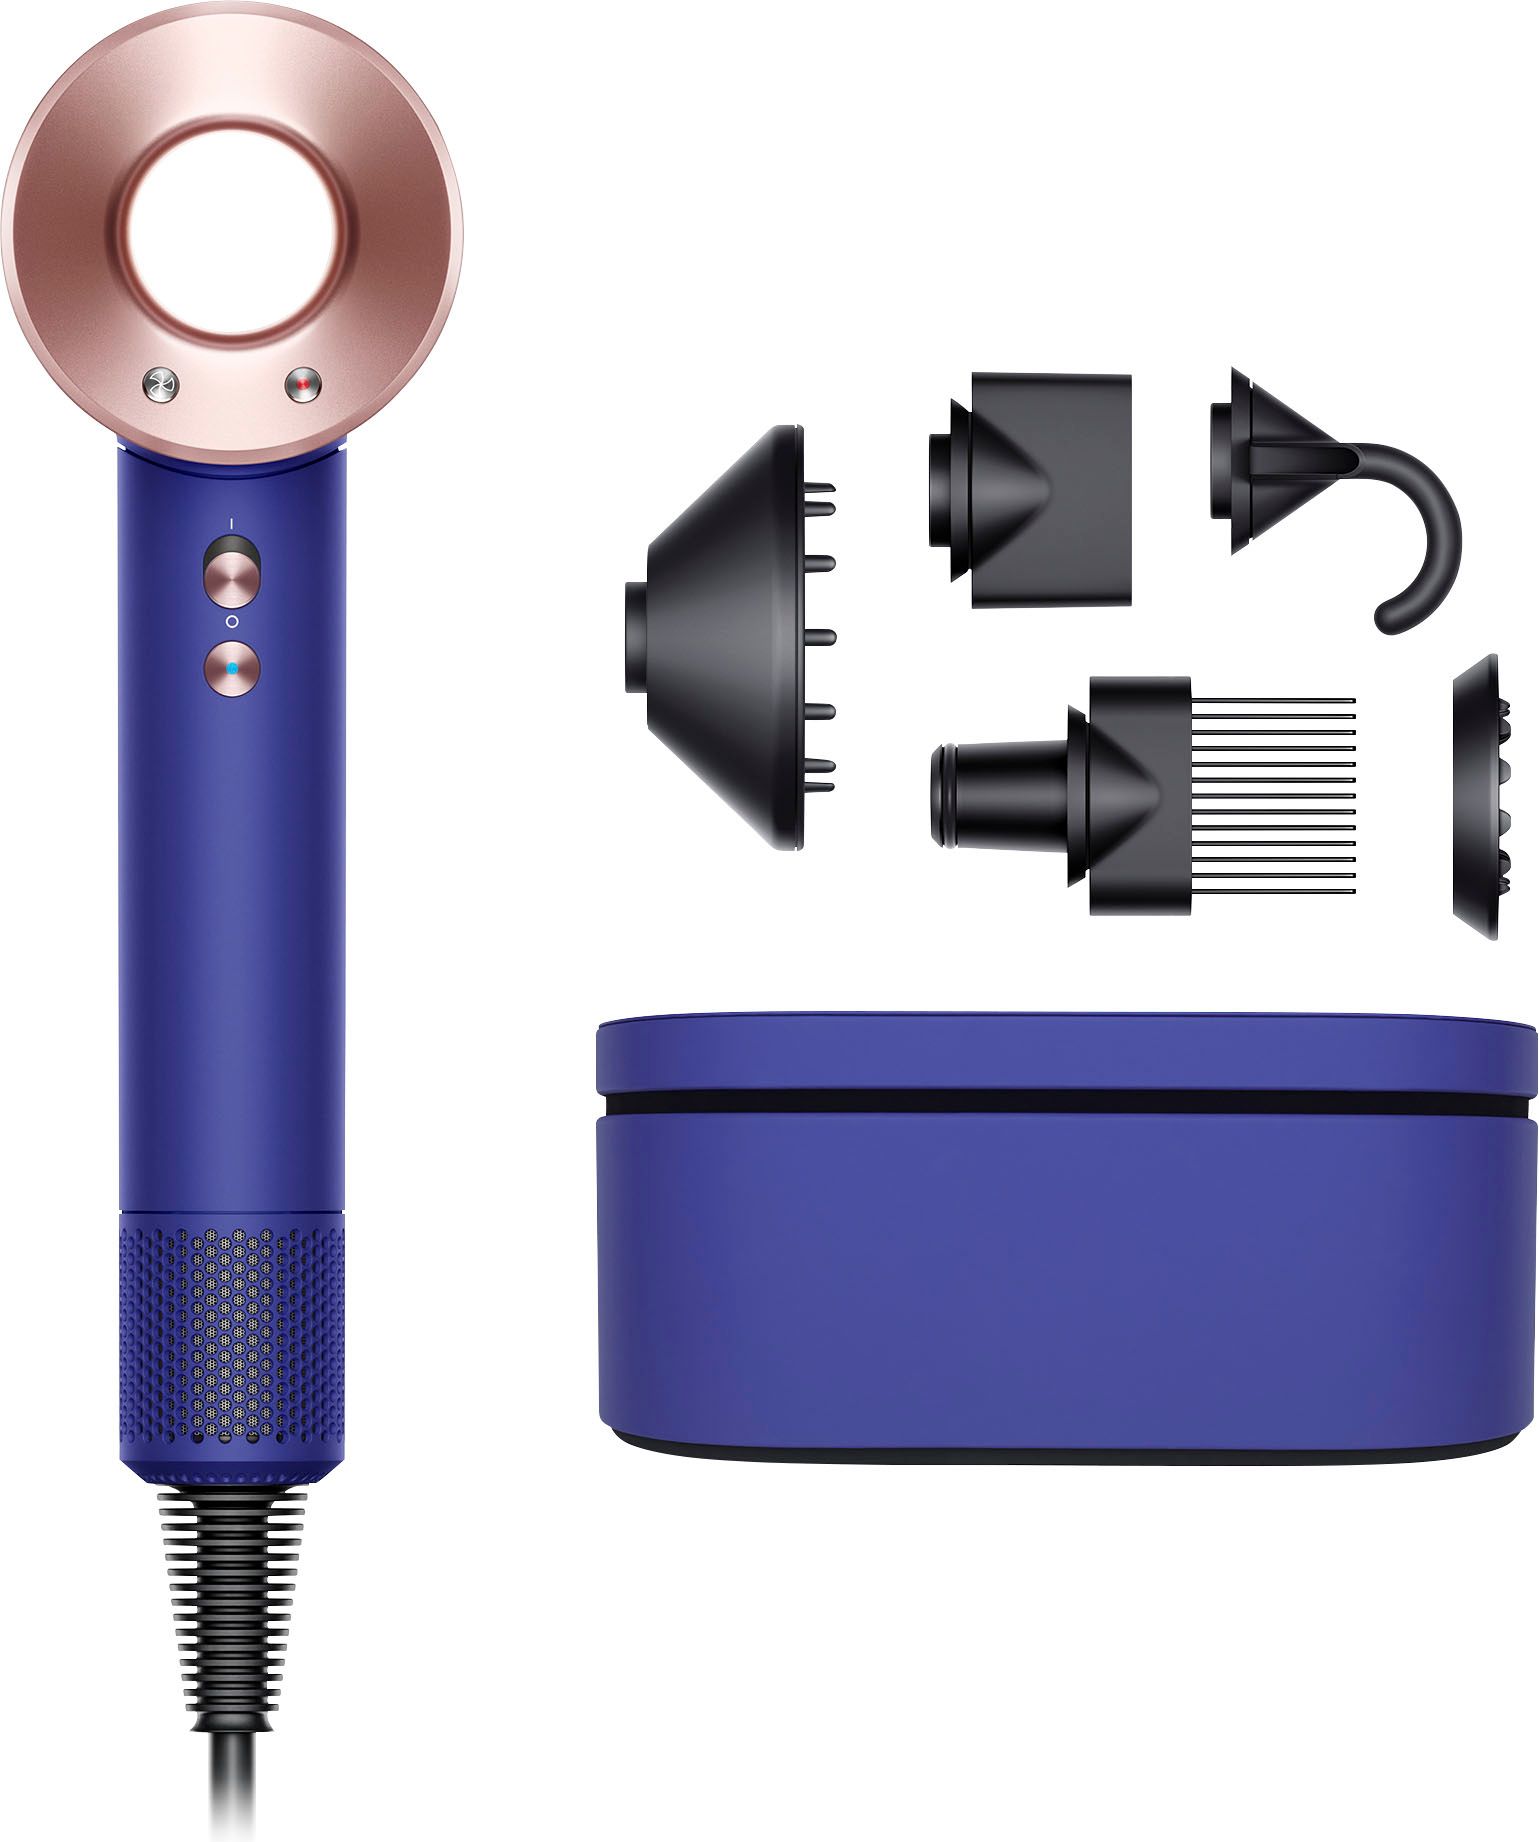 Dyson Supersonic Hair Dryer Vinca Blue/Rosé 426076-01 - Best Buy | Best Buy U.S.